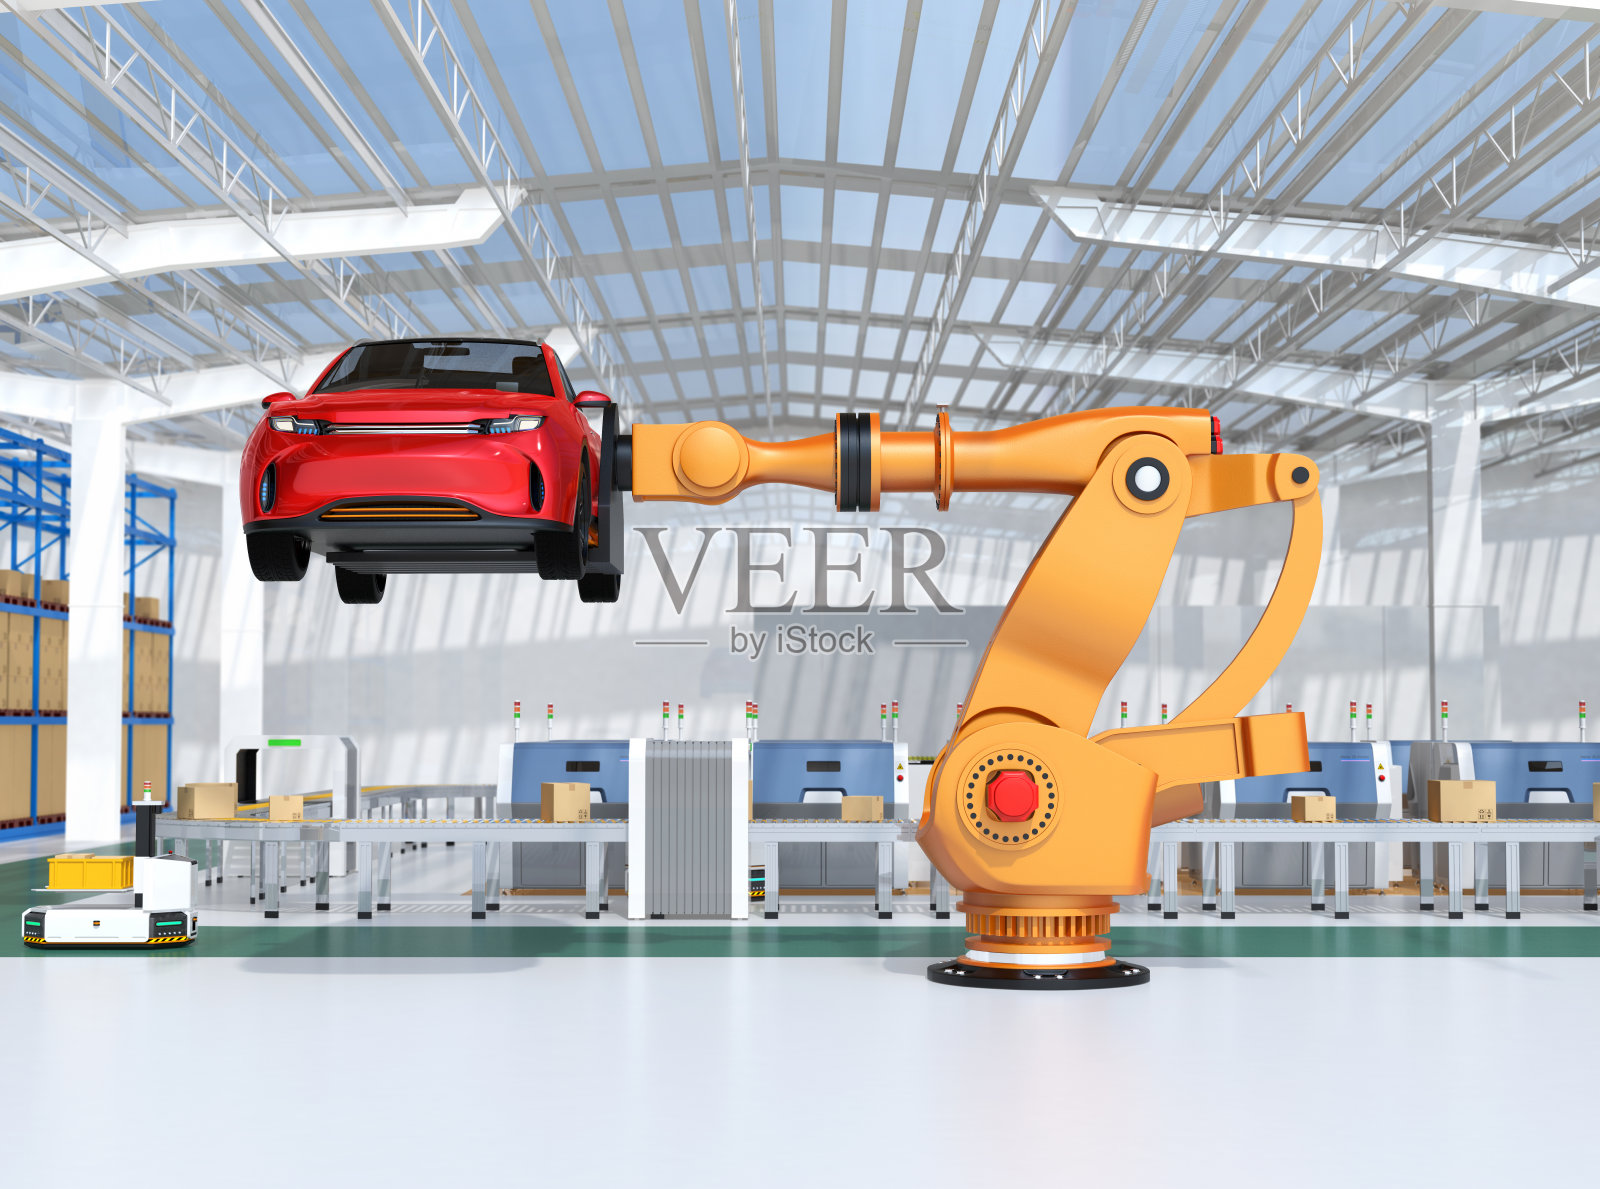 橙色重量级机器人手臂携带红色SUV在装配工厂照片摄影图片